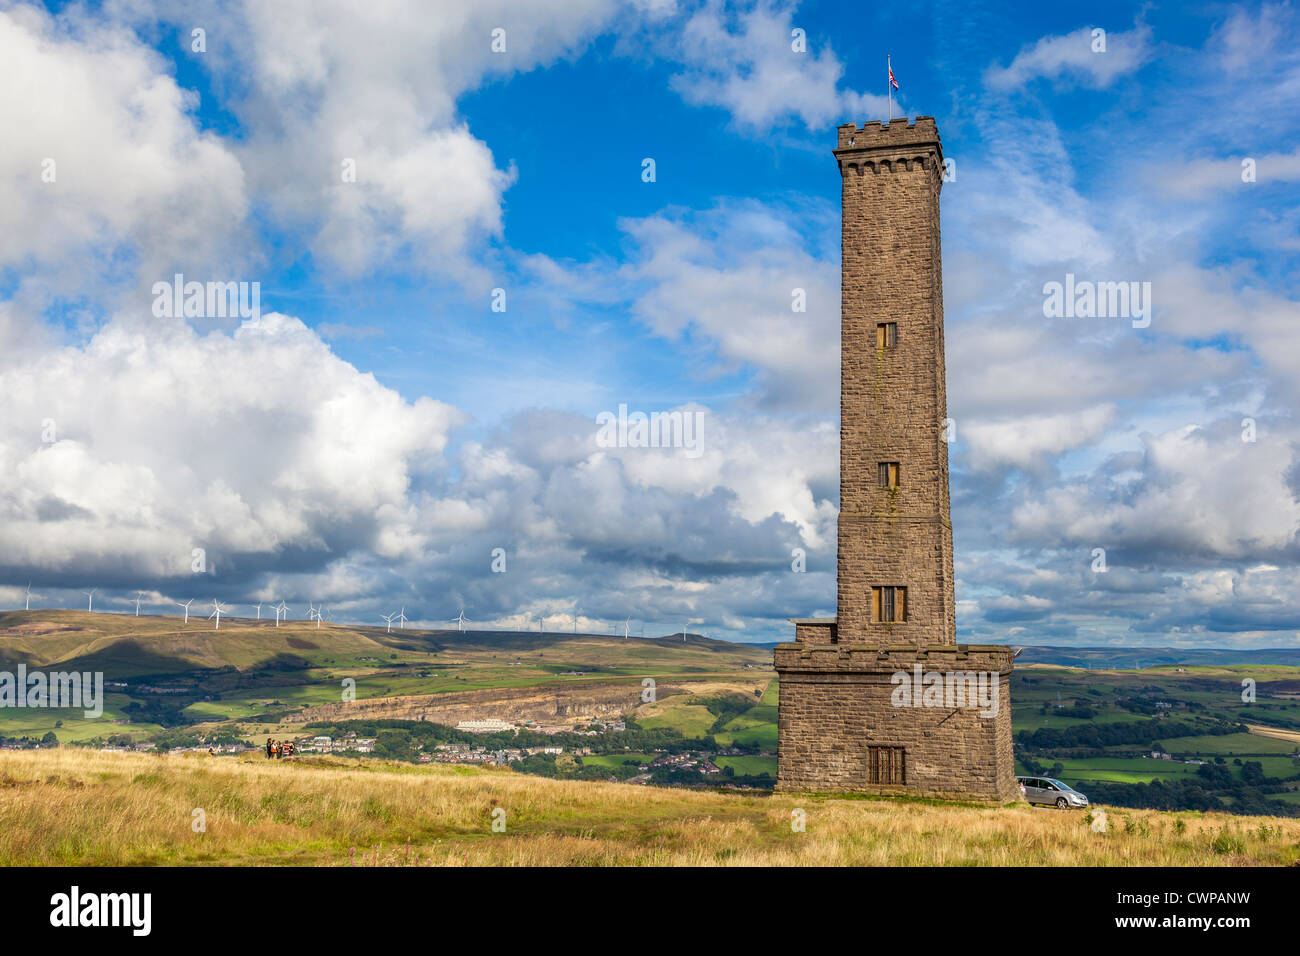 La torre di pelatura a Holcombe in Lancashire. Commemora Sir Robert Peel una volta Primo Ministro della Gran Bretagna. Foto Stock